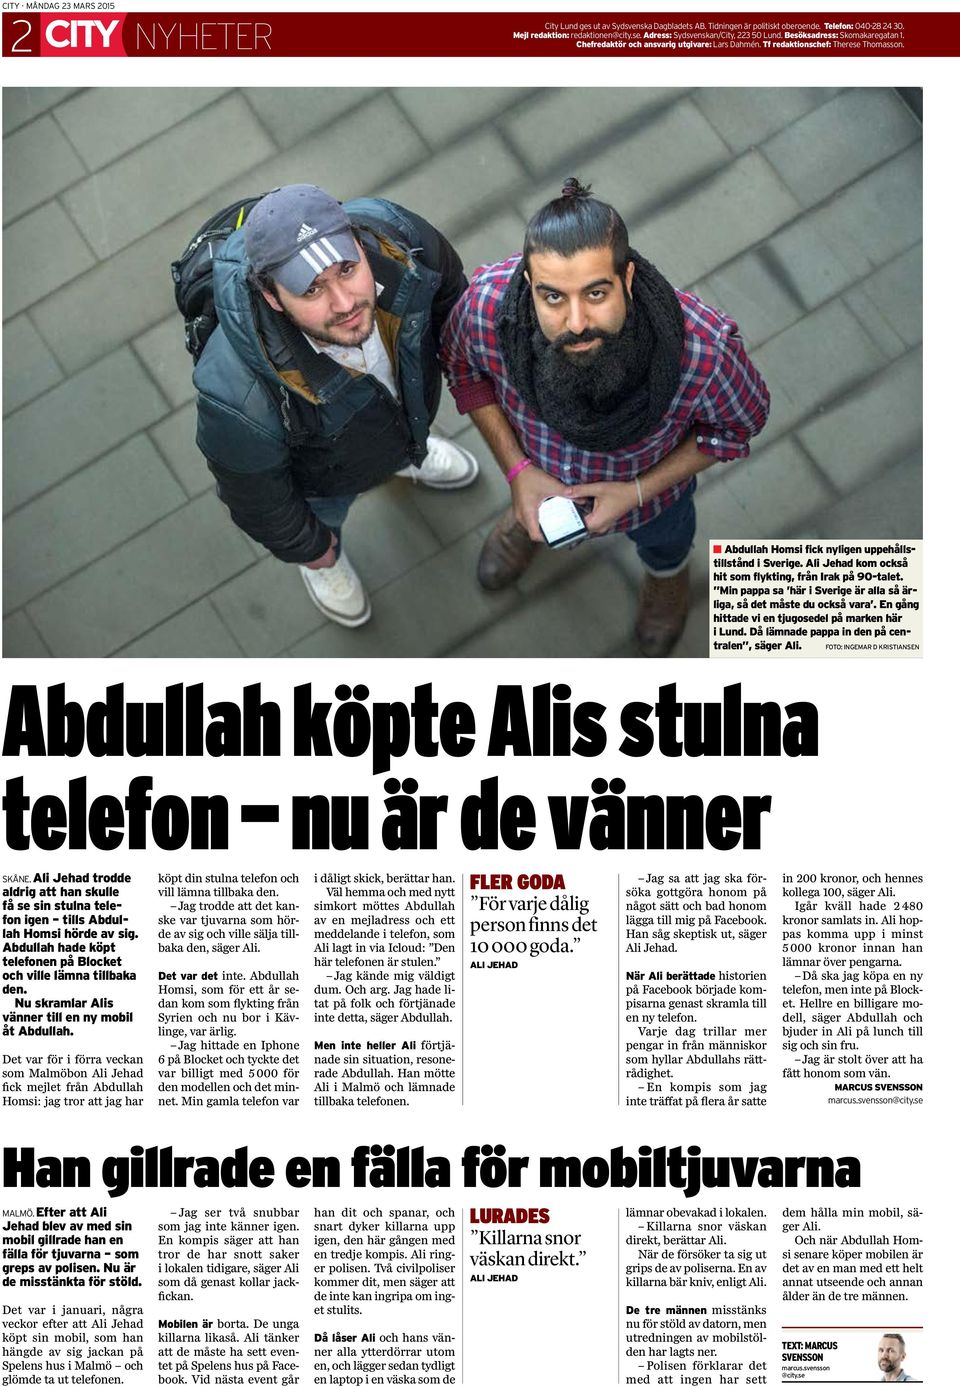 Ali Jehad kom också hit som flykting, från Irak på 90-talet. Min pappa sa här i Sverige är alla så ärliga, så det måste du också vara. En gång hittade vi en tjugosedel på marken här i Lund.